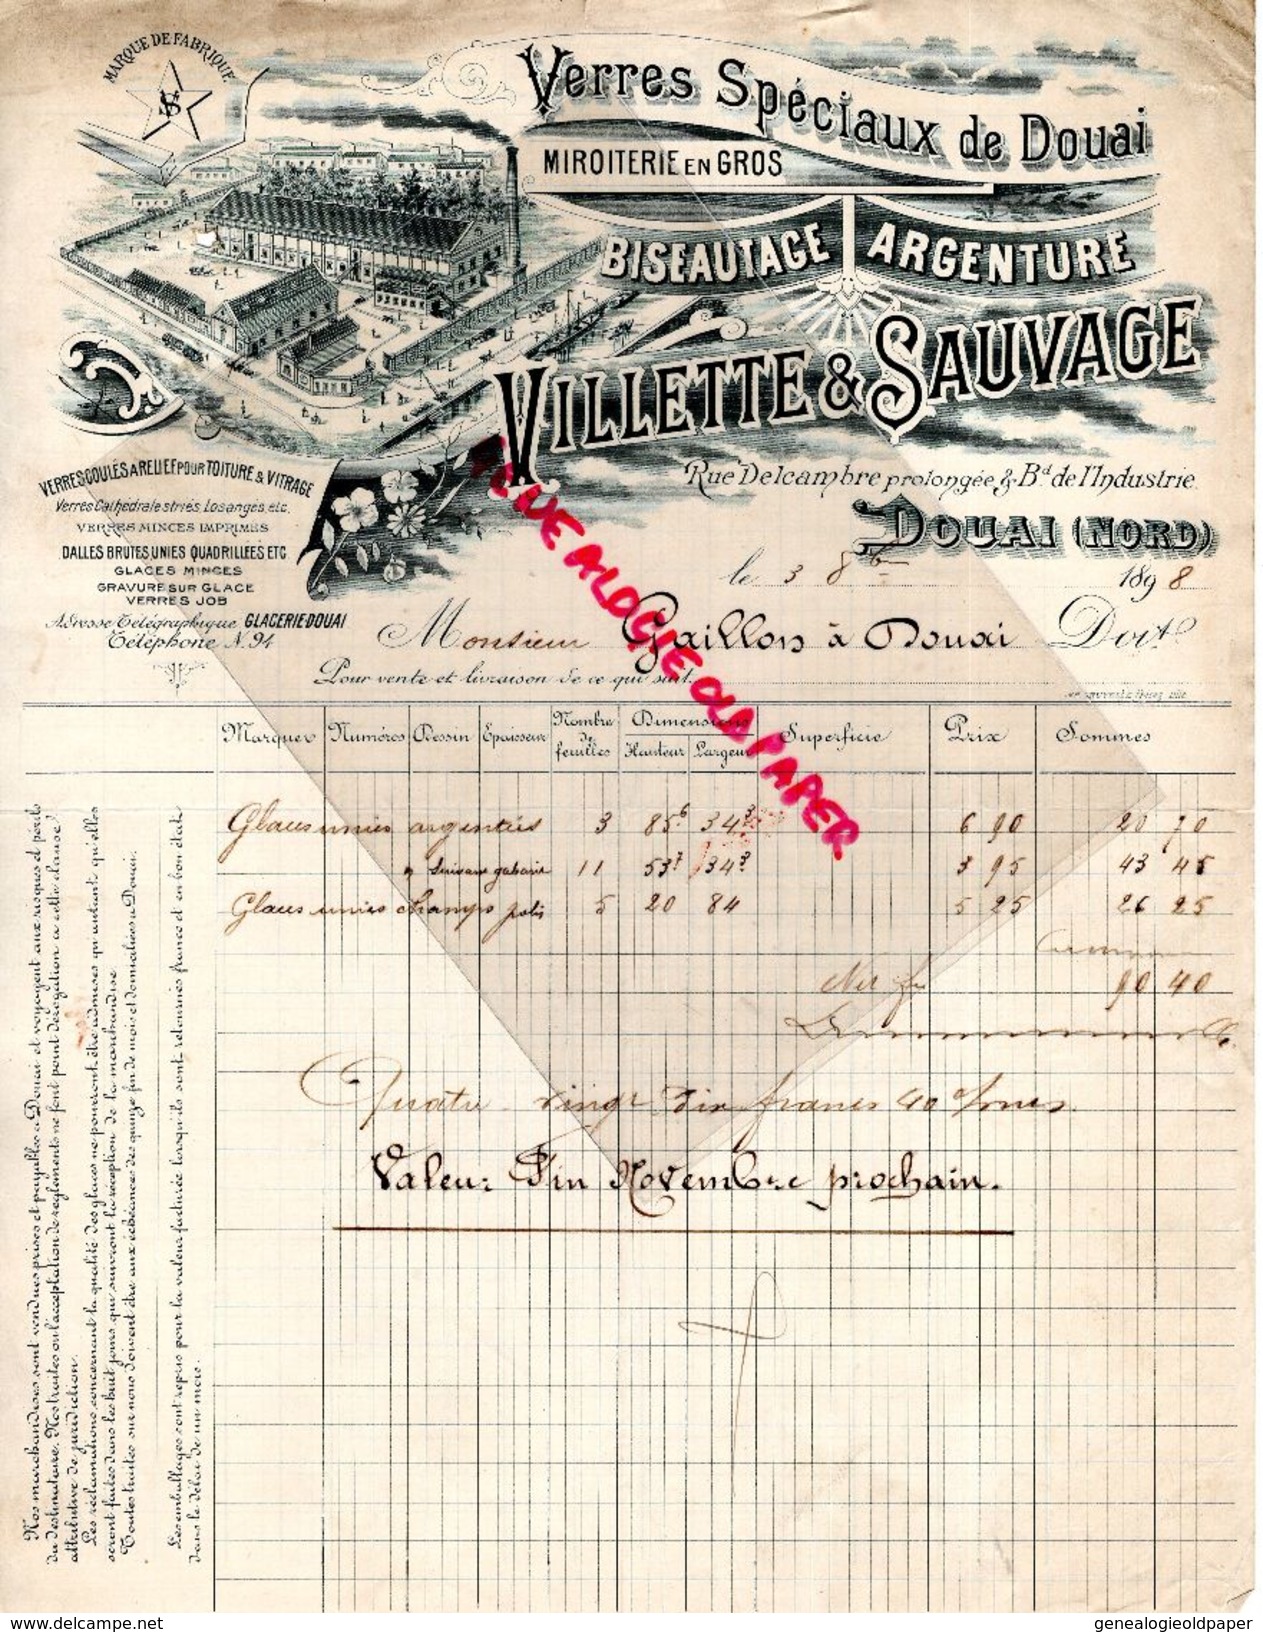 62- DOUAI- 1898  RARE FACTURE VILLETTE & SAUVAGE-VERRERIE MIROITERIE-ARGENTURE-RUE DELCAMBRE PROLONGEE-BD INDUSTRIE- - Old Professions